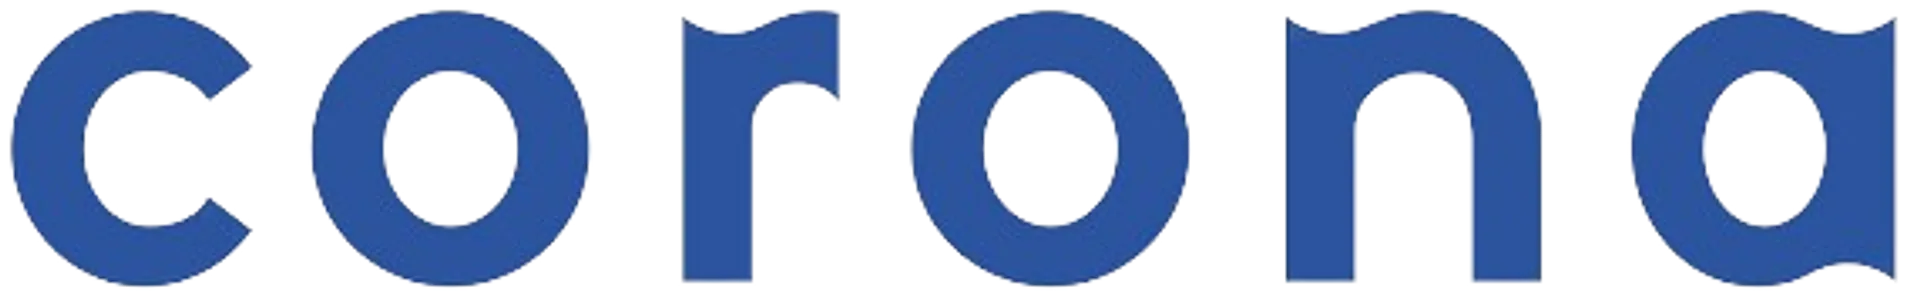 HIPERCENTRO CORONA logo de catálogo